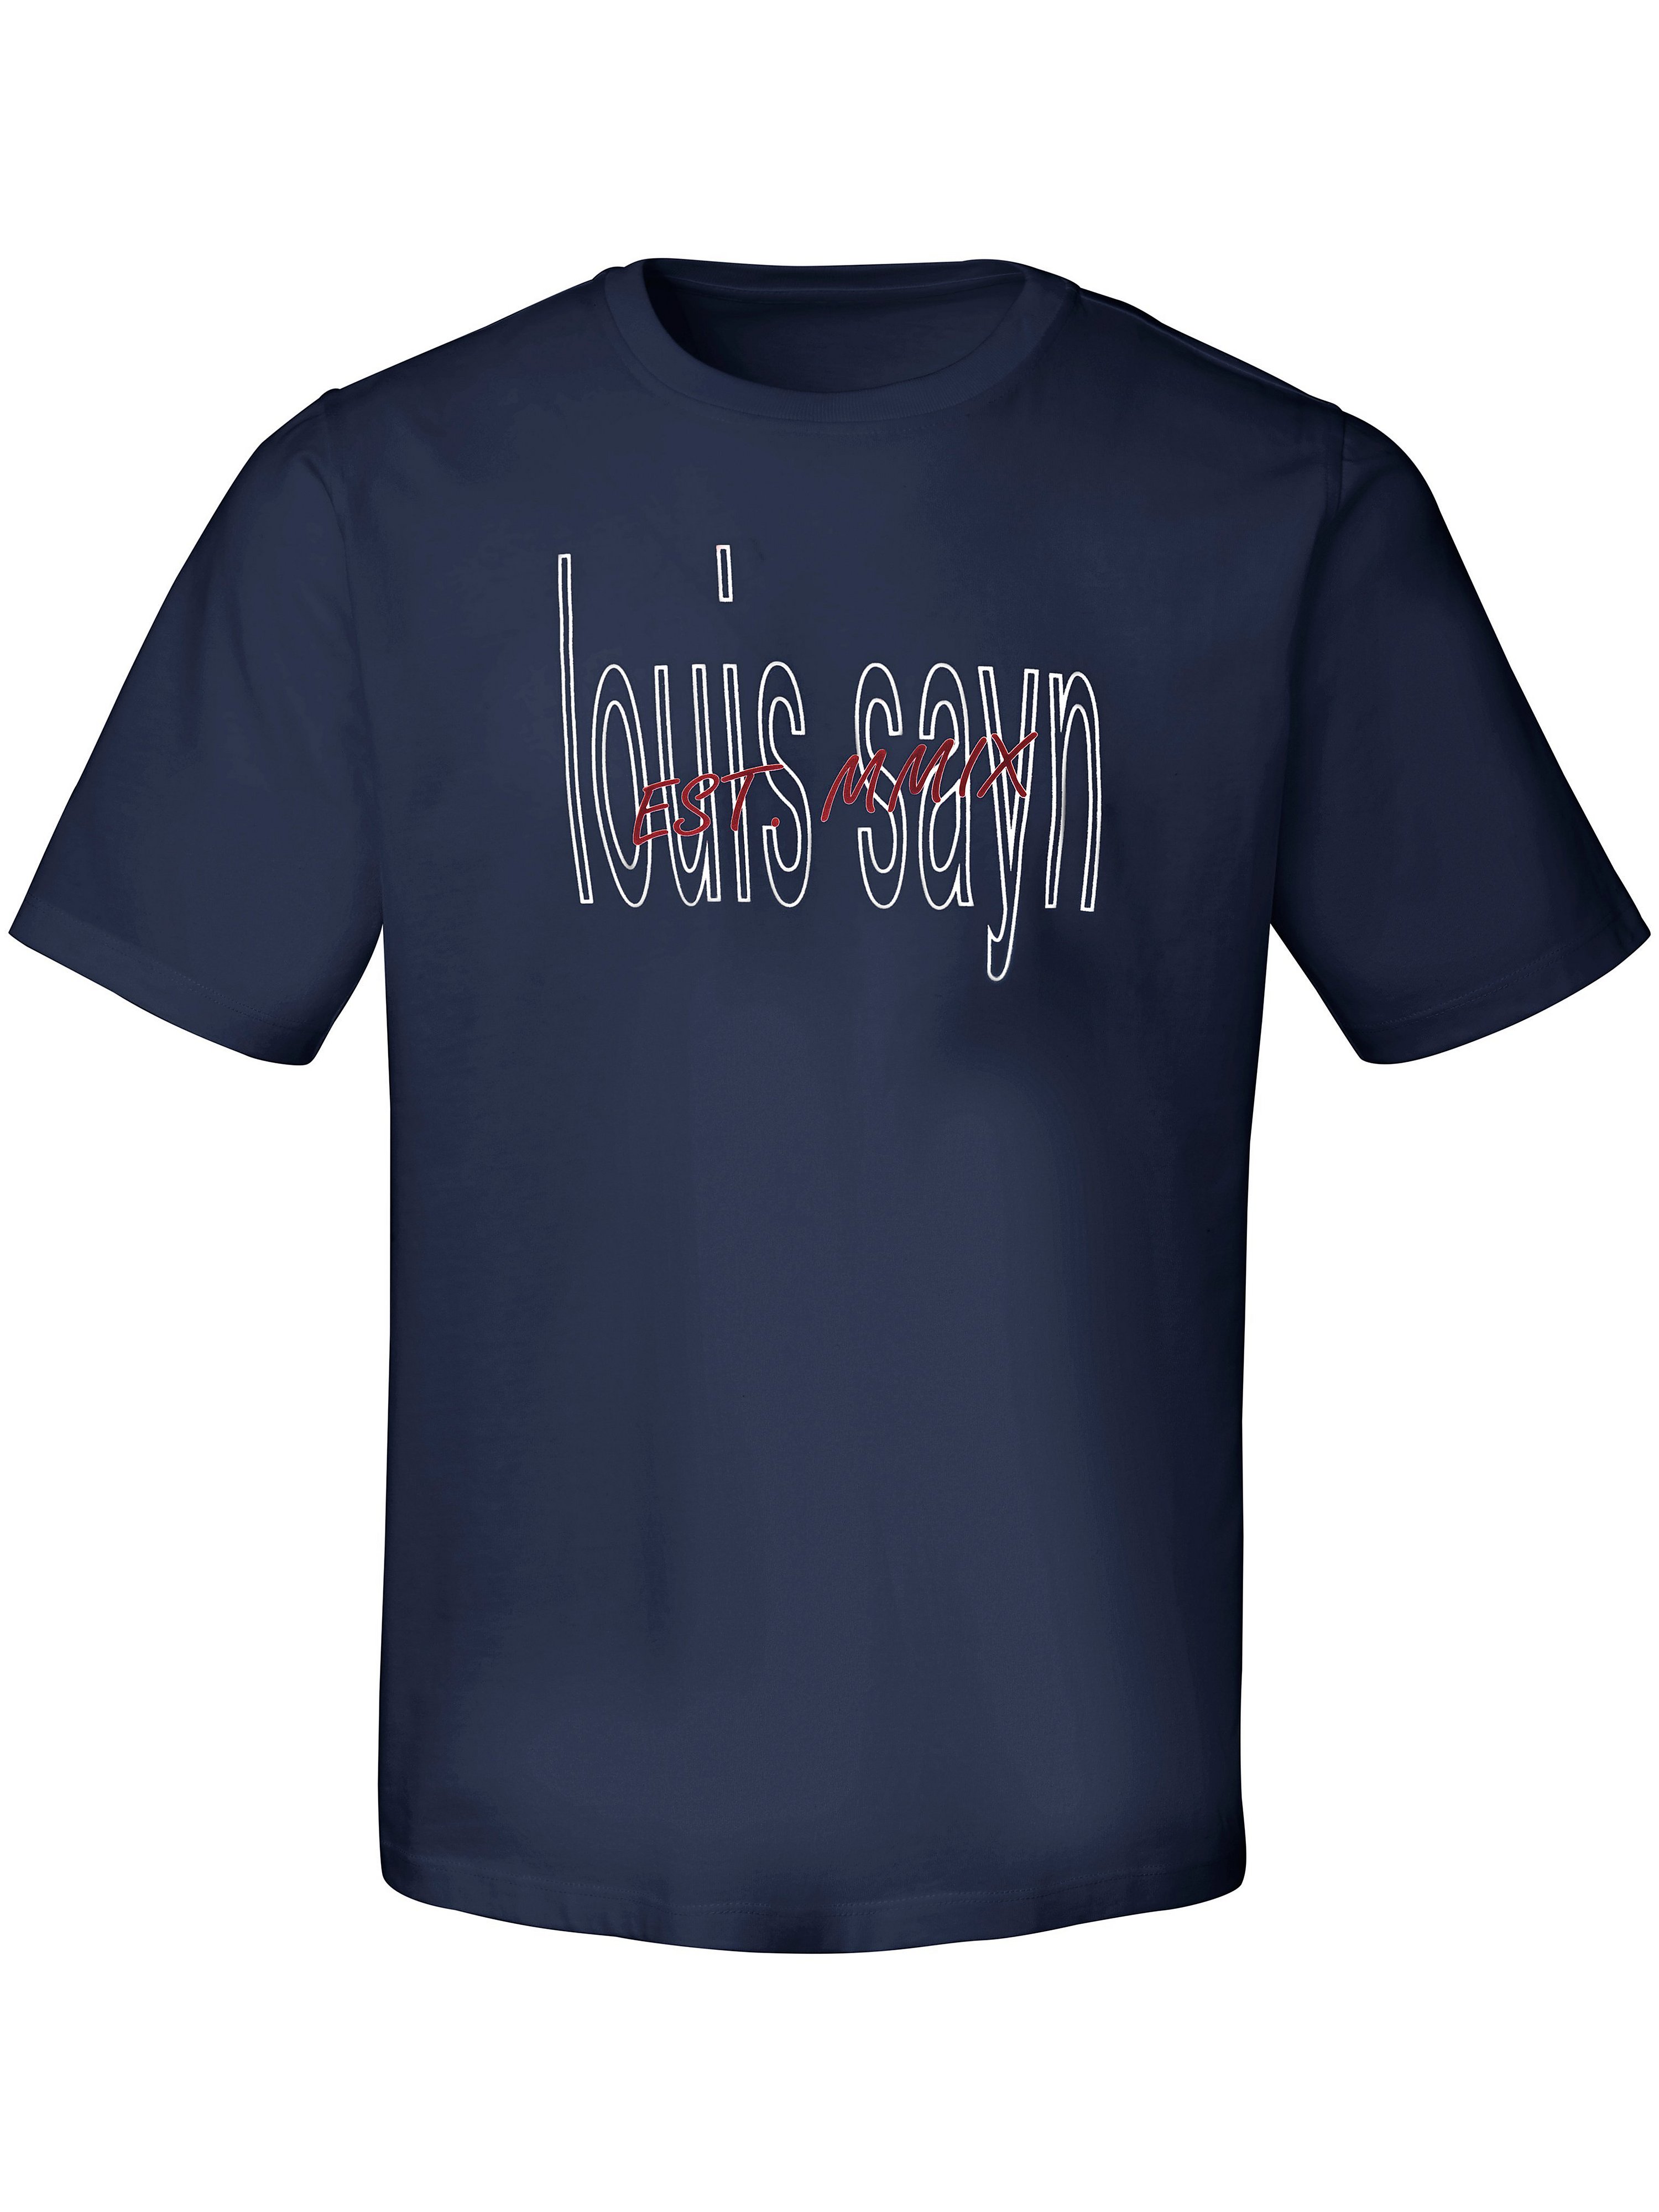 Le T-shirt 100% coton  Louis Sayn bleu taille 56